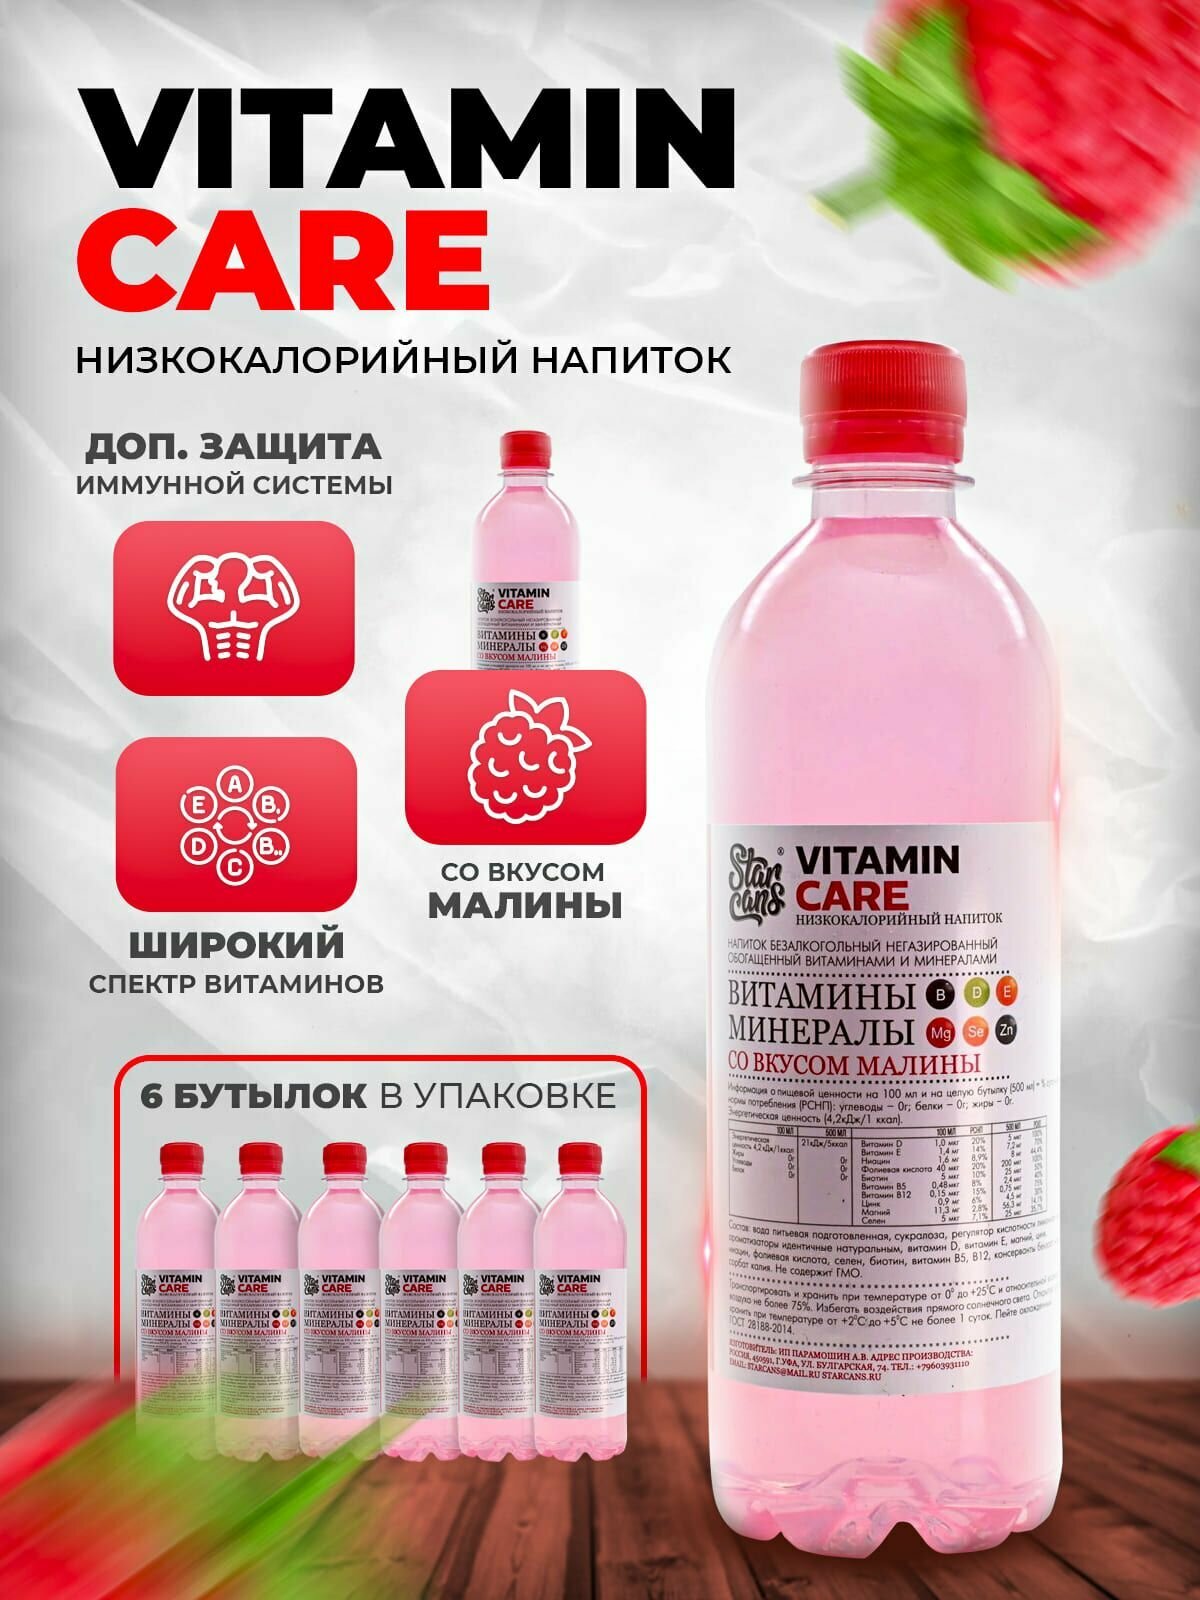 VITAMIN CARE Напиток безалкогольный негазированный обогащённый витаминами и минералами со вкусом Малины